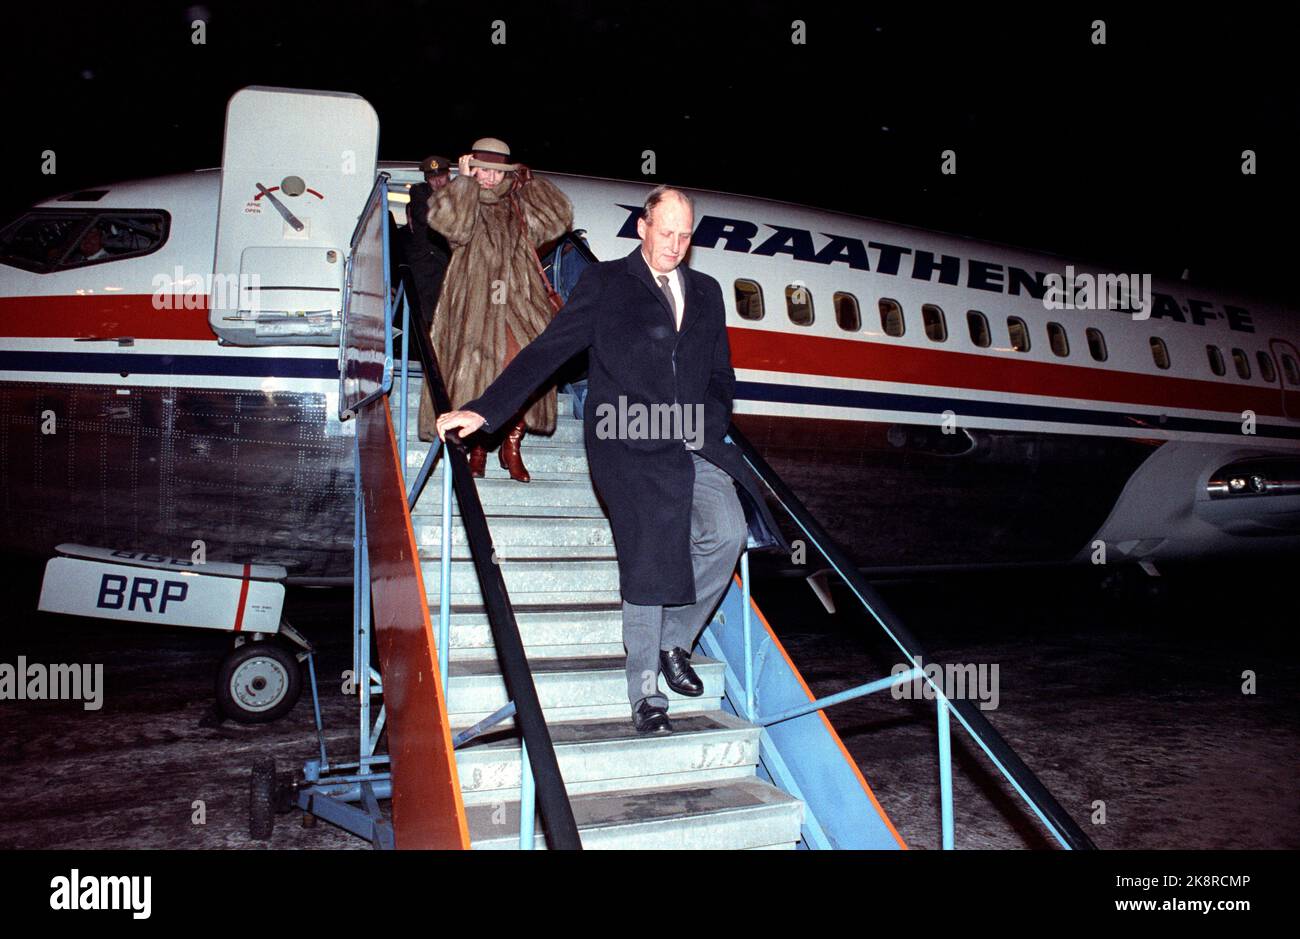 Svalbard 19911127: Das königliche Paar besucht Svalbard. Bild: Longyearbyen. König Harald und Königin Sonja kommen am Flughafen Svalbard an. Das königliche Paar geht die Treppe hinunter. - Flüge von Braathens - Foto: Jon EEG Stockfoto